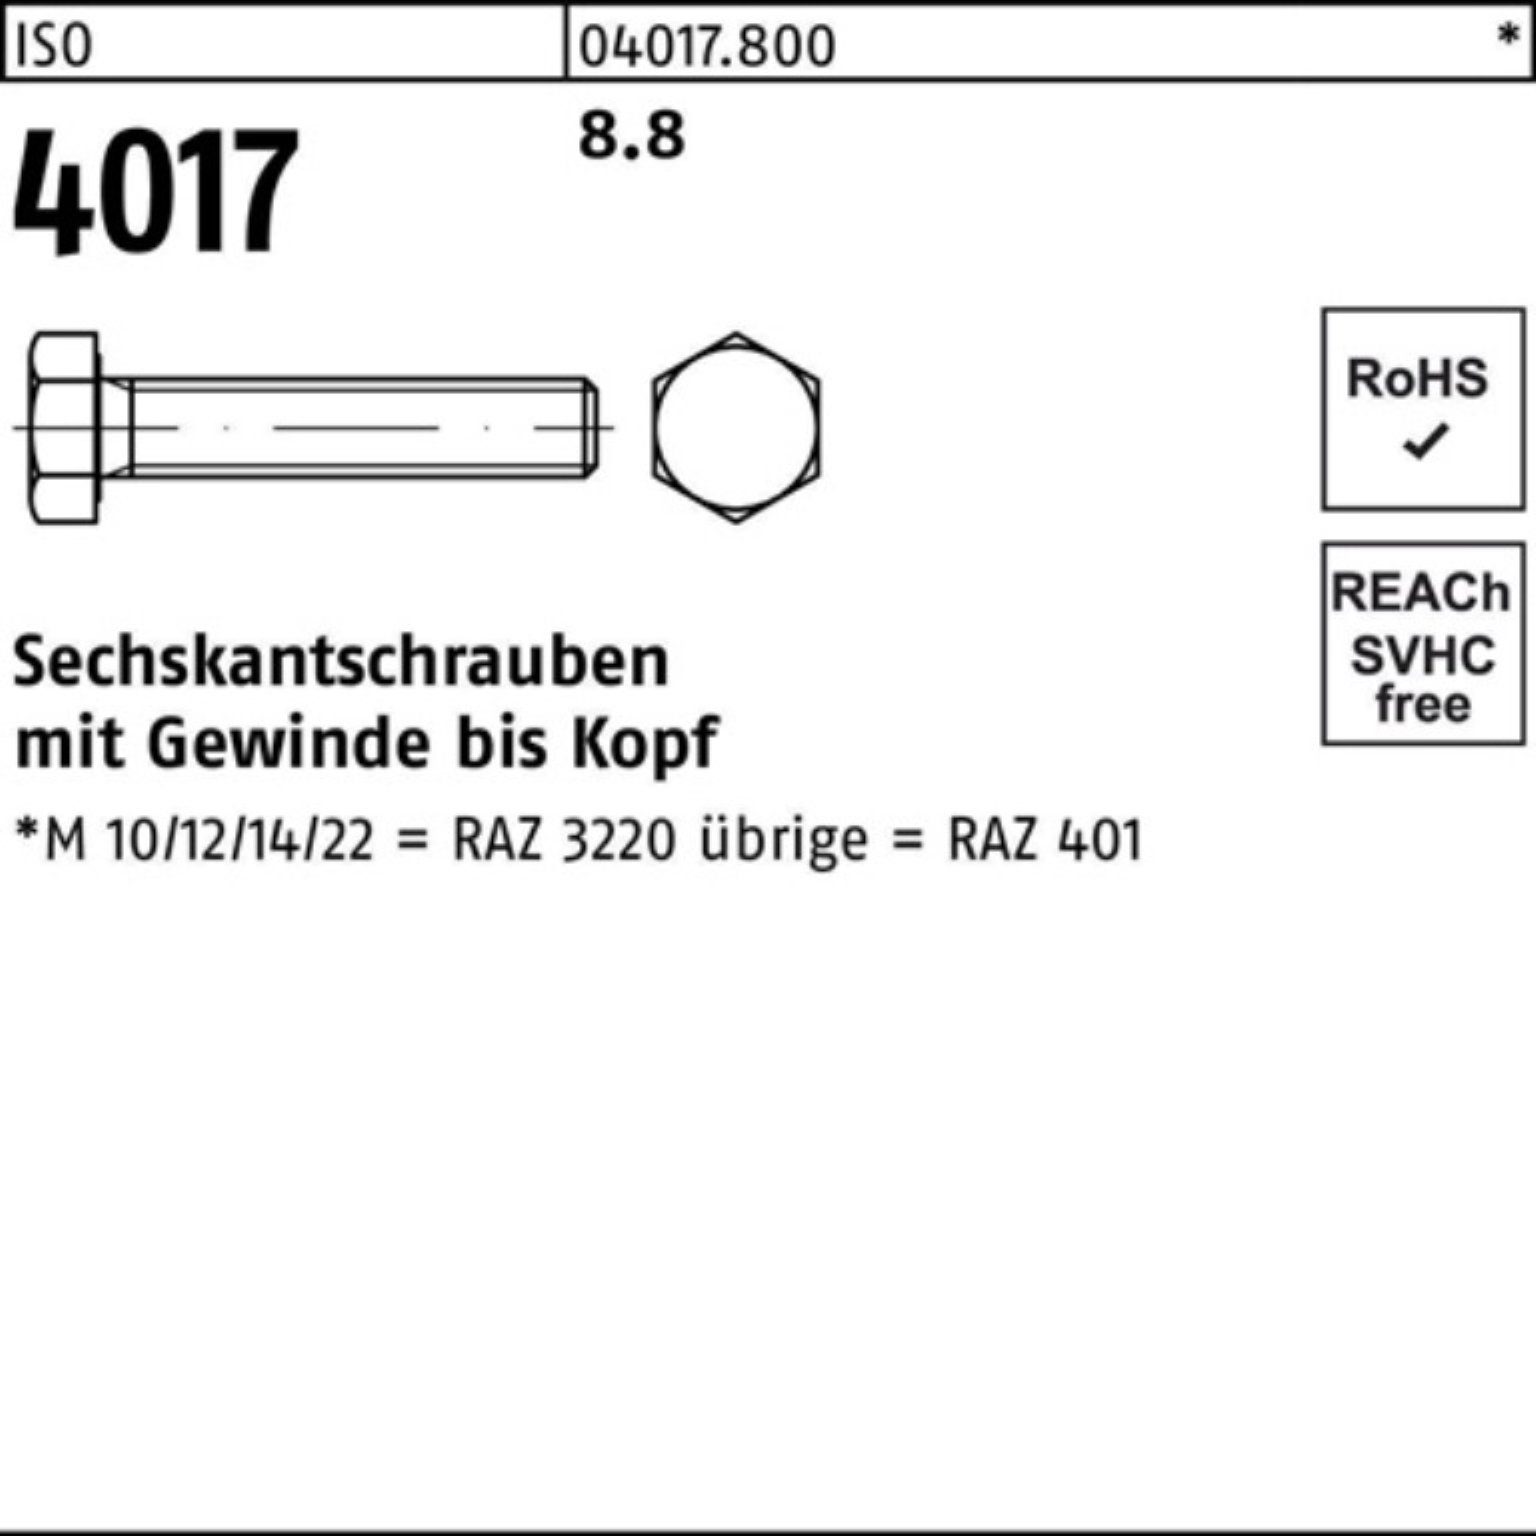 Sechskantschraube Sechskantschraube 100 ISO 55 8.8 ISO 40 Bufab Pack VG 100er M14x 4017 Stück